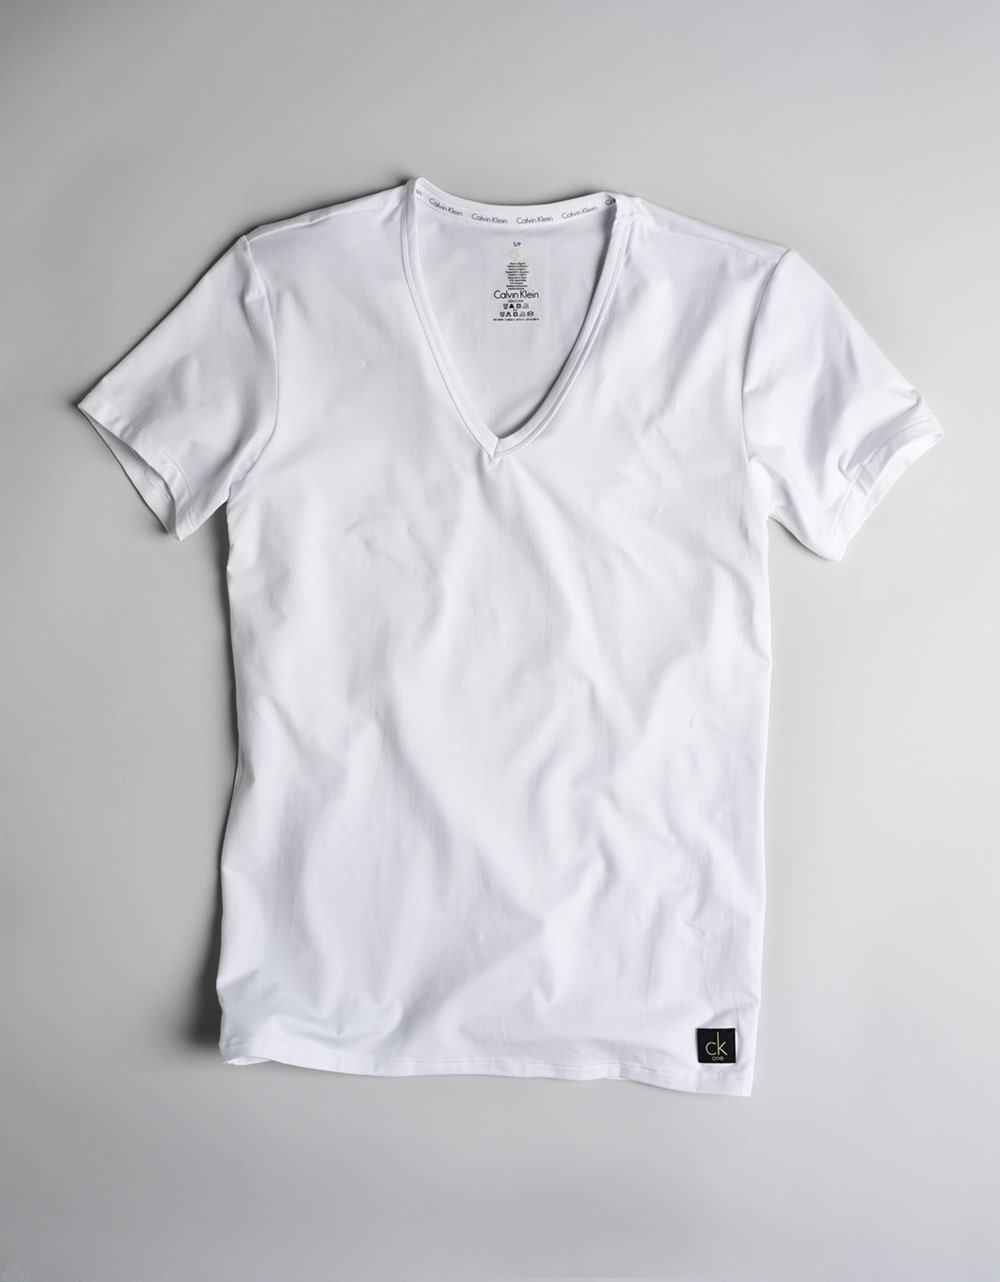 Calvin Klein Microfiber V-neck T-shirt in White for Men - Lyst